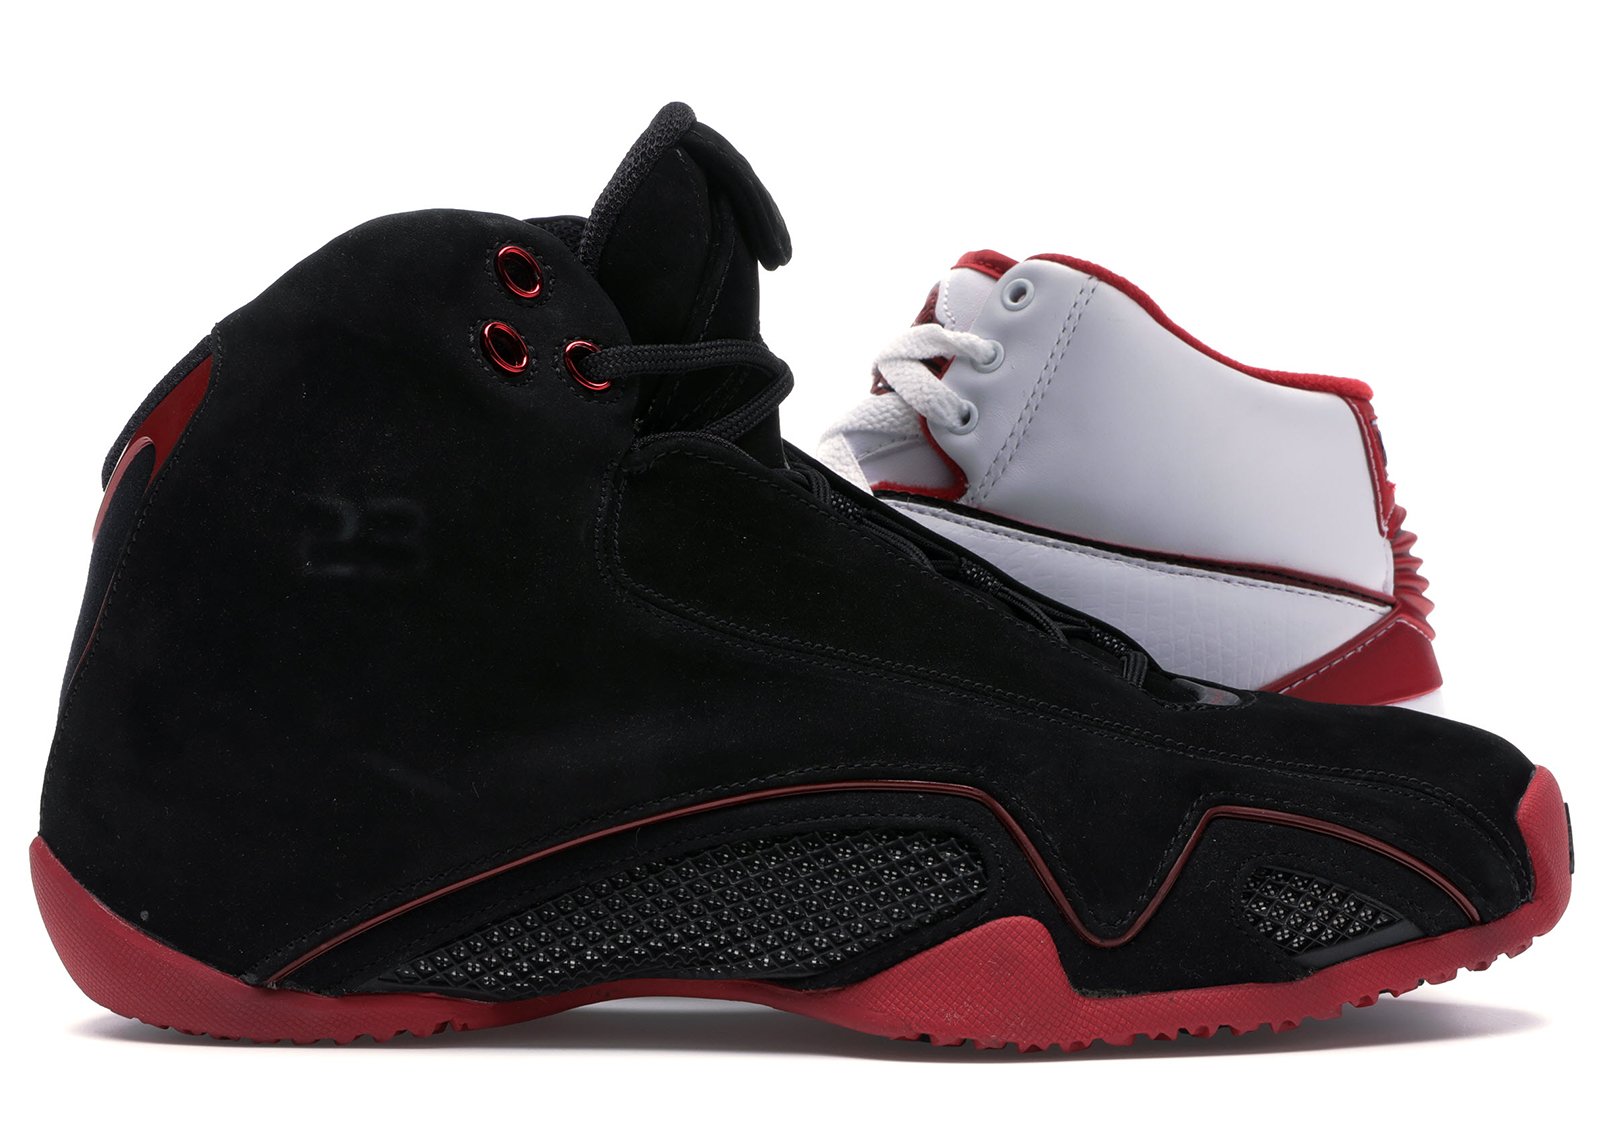 Jordan Countdown Pack 2/21 sneakers